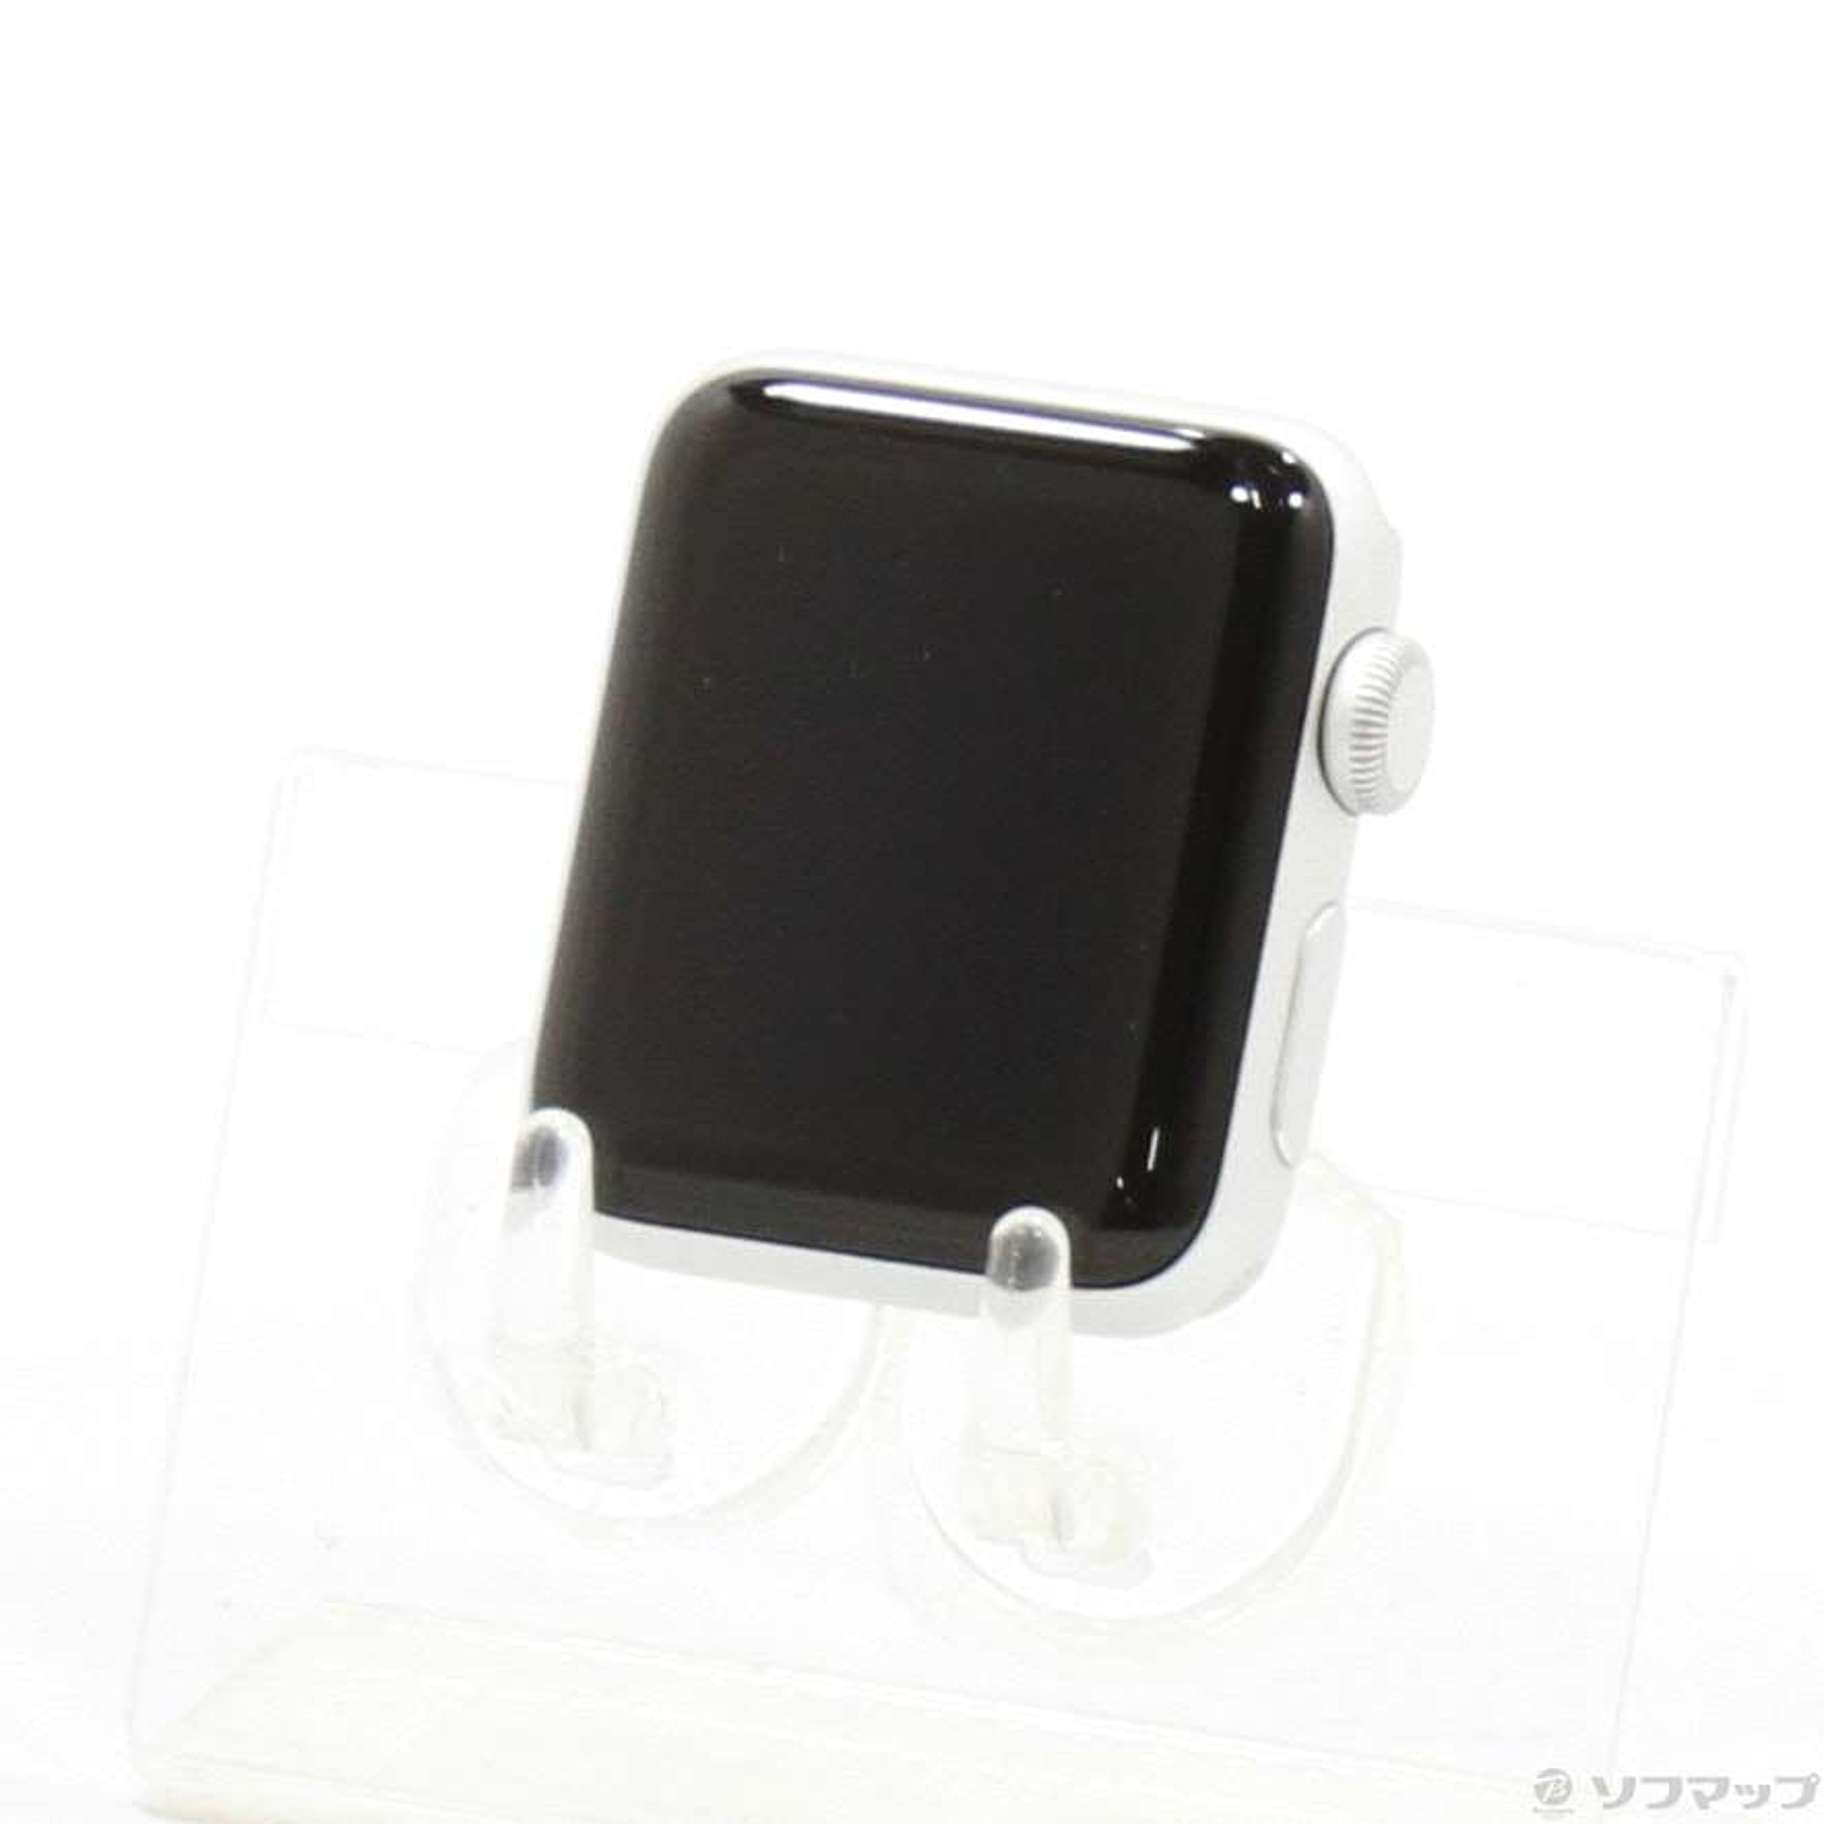 【セール安い】Apple Watch Series 3 38mm シルバーアルミニウム 箱あり 時計